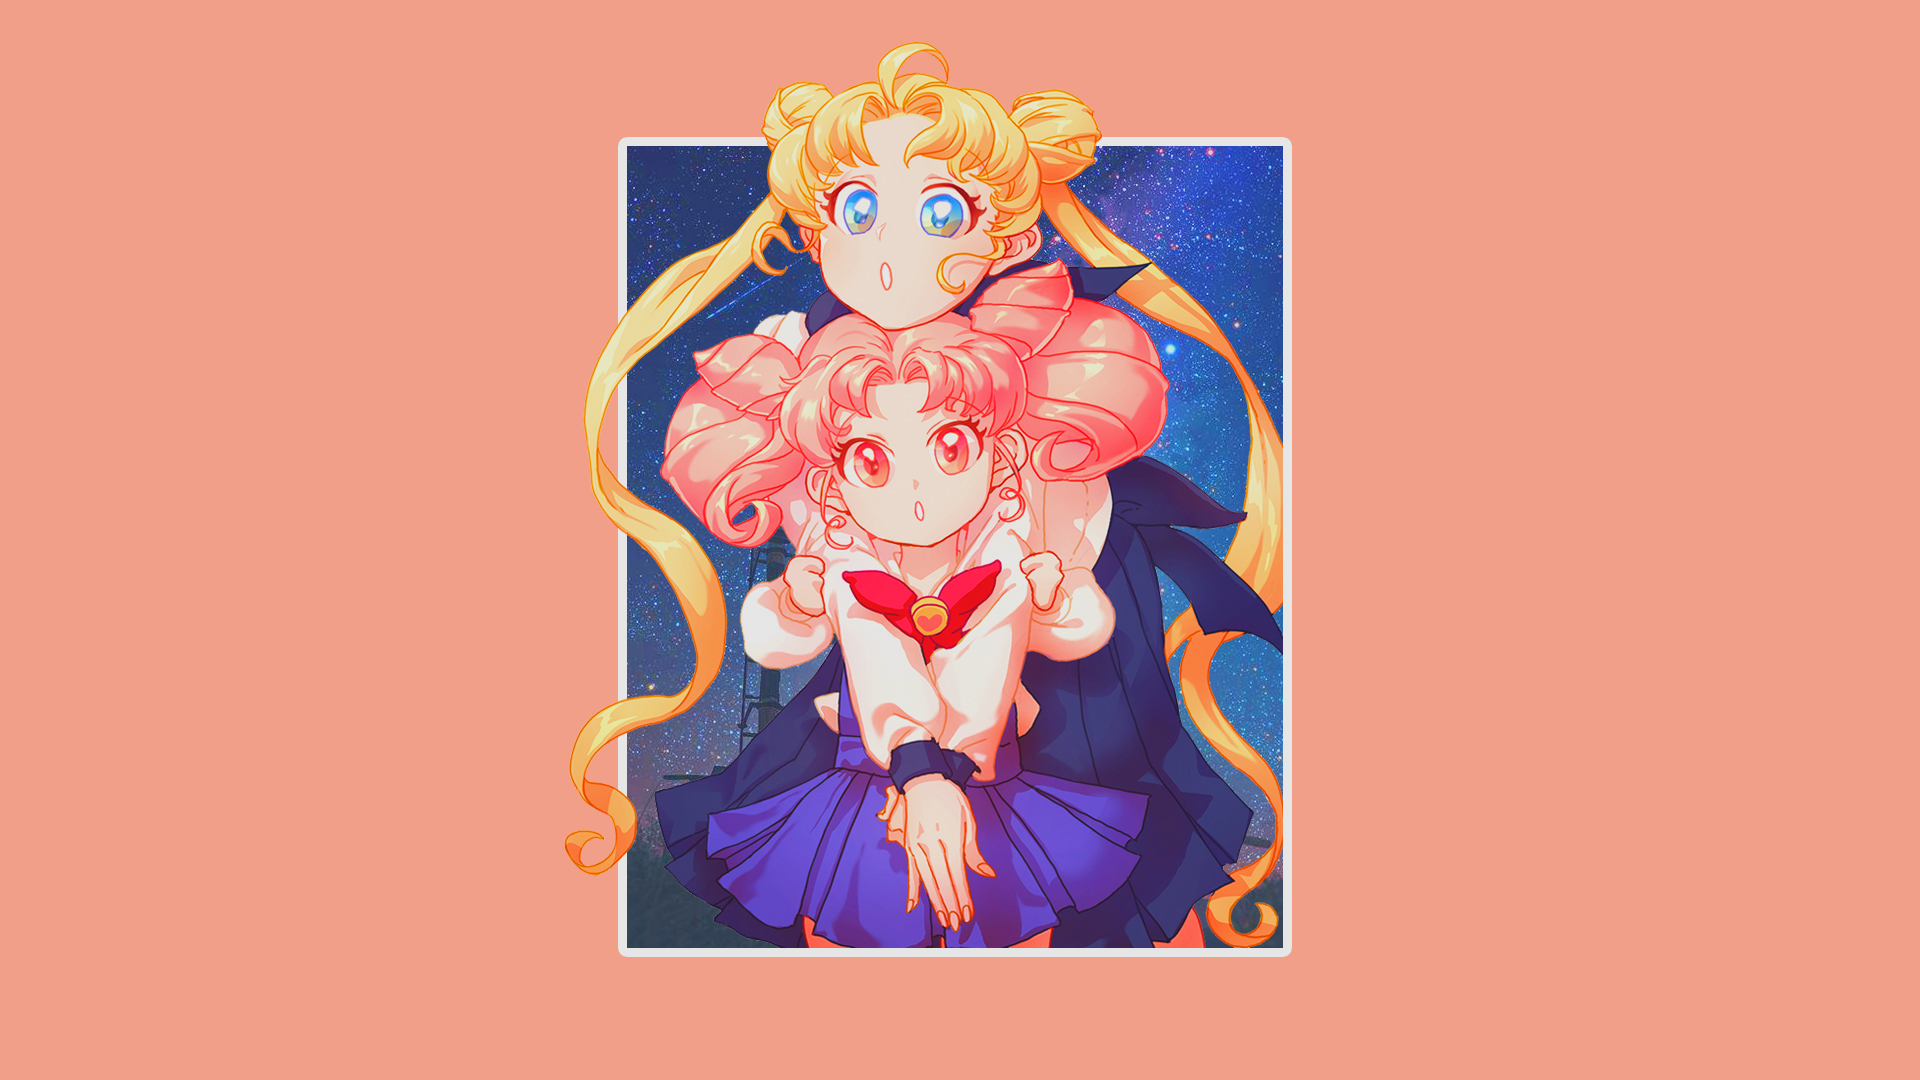 Sailor Moon Usagi Tsukino Anime Anime Girls 1920x1080